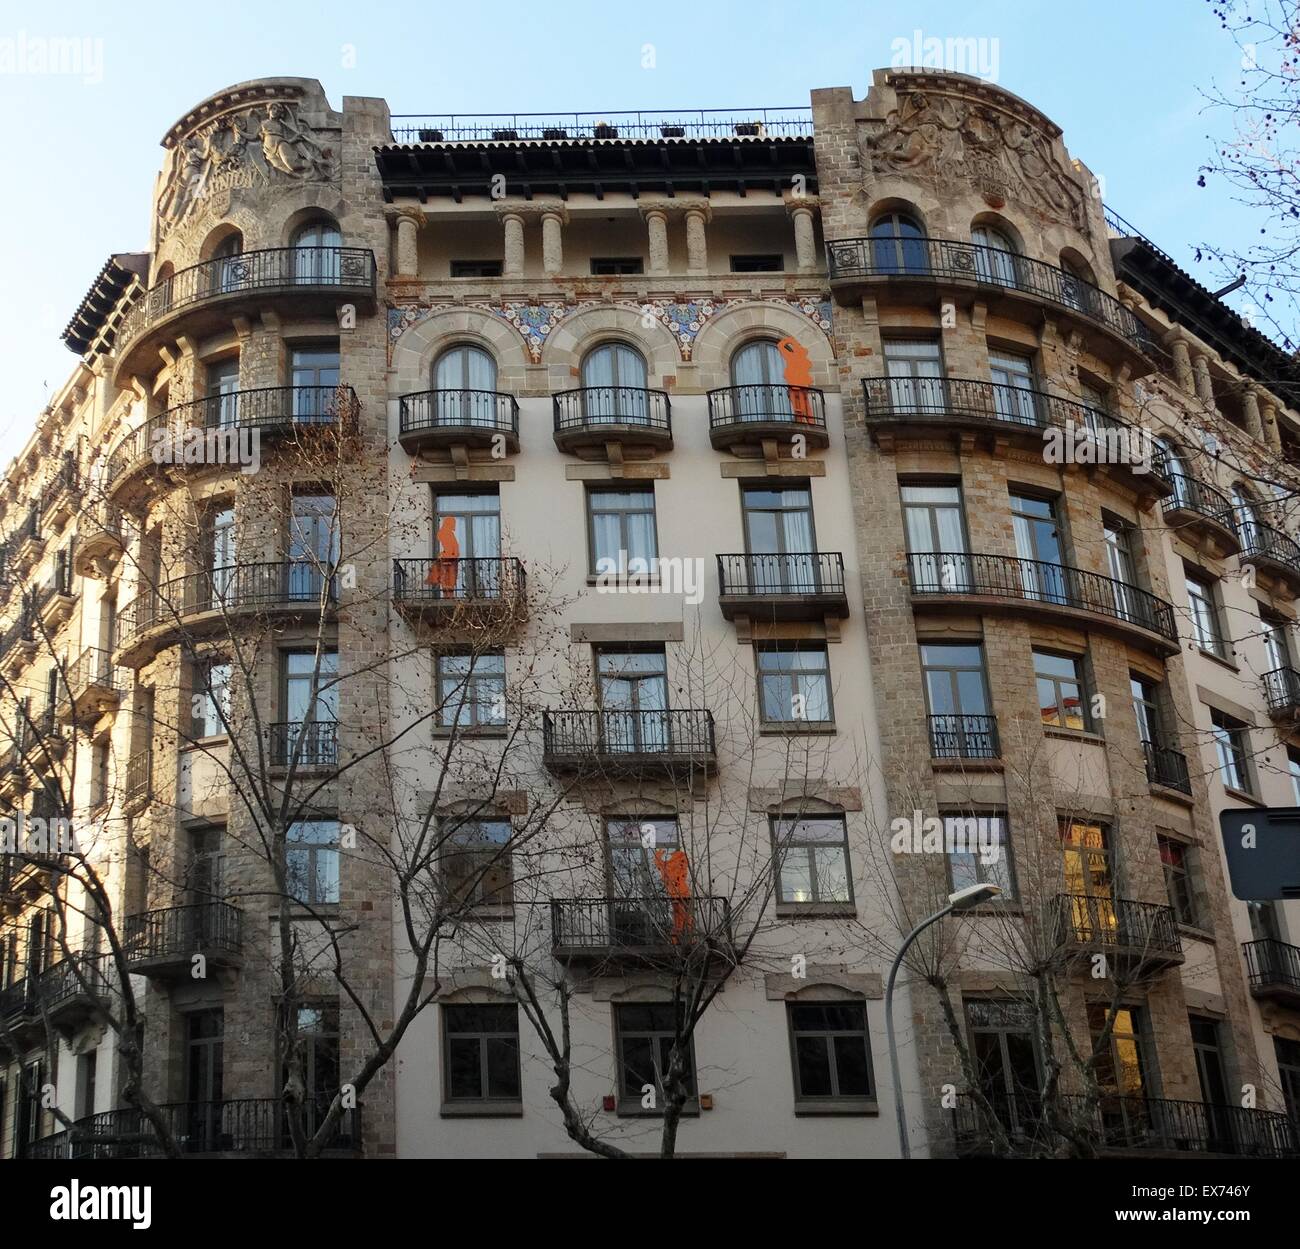 Façade d'appartements datant du début du xxe siècle, Barcelone, Espagne Banque D'Images